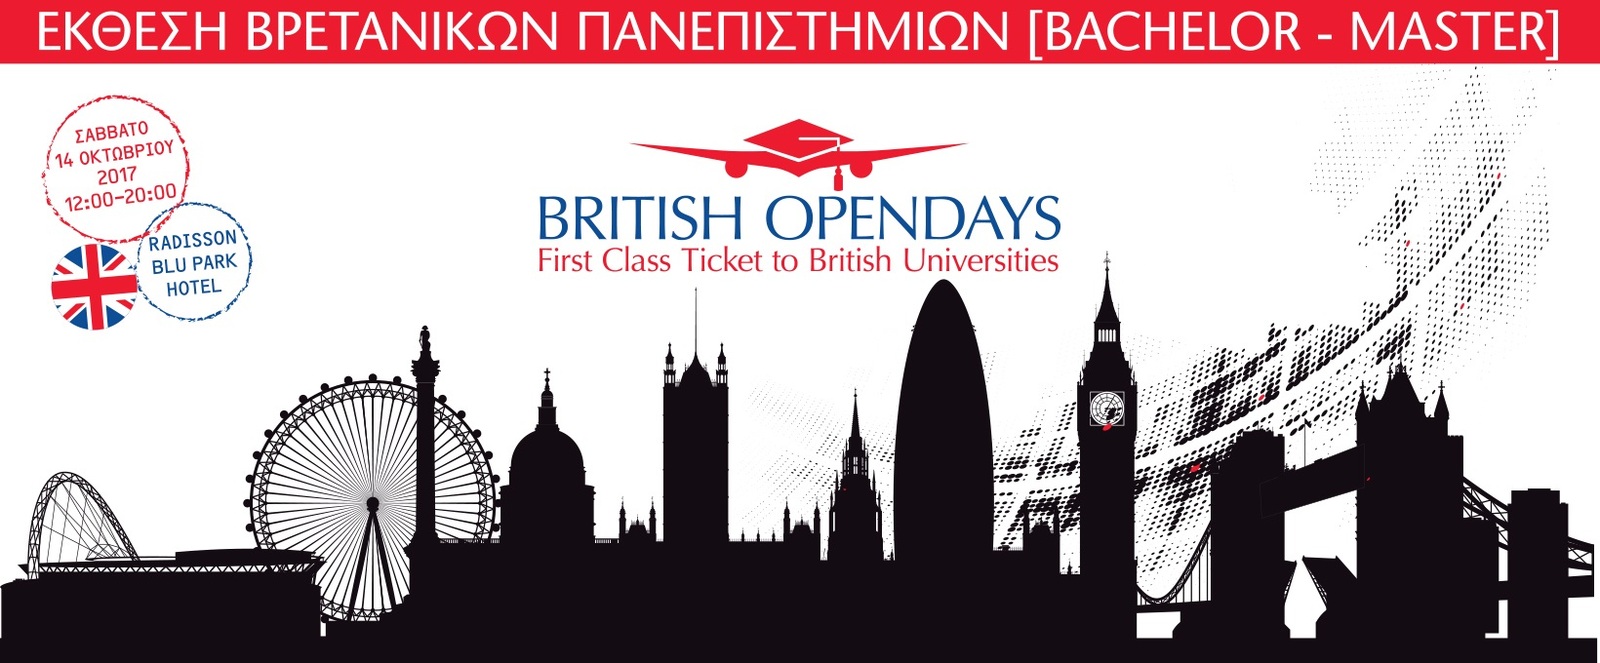 BRITISH OPENDAYS(1).jpg